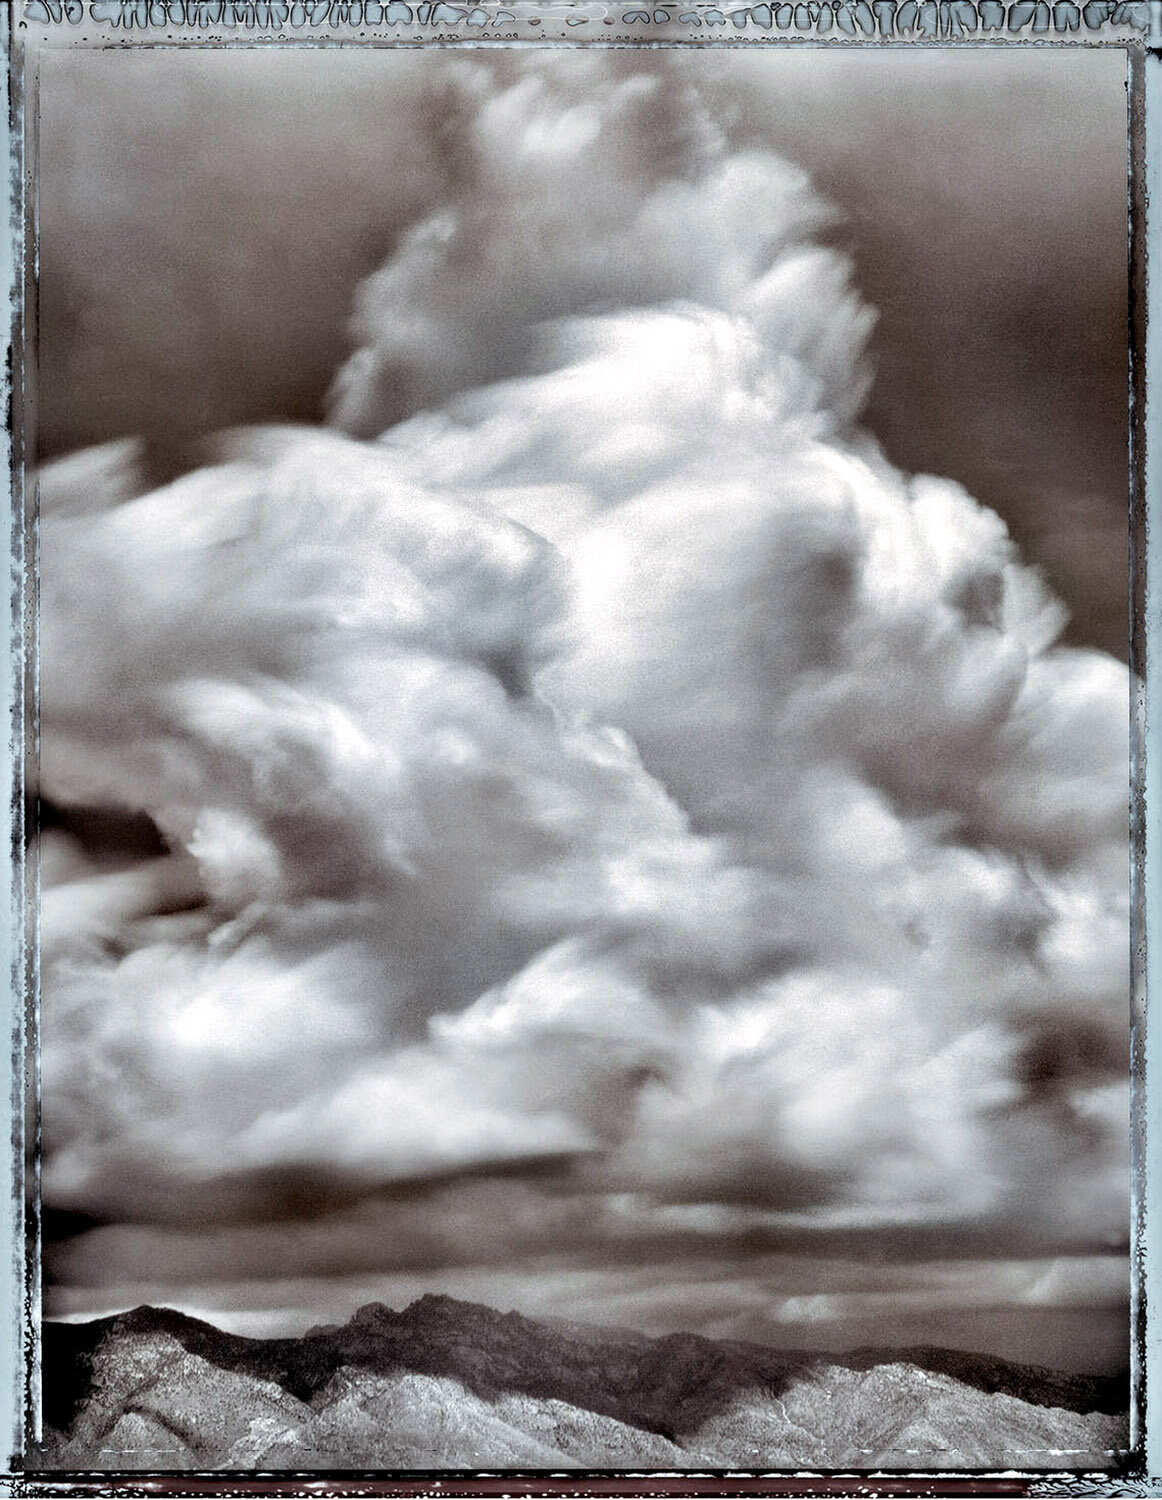 Cloud # 100, Stormcloud Building over the Catalinas, Tucson, AZ